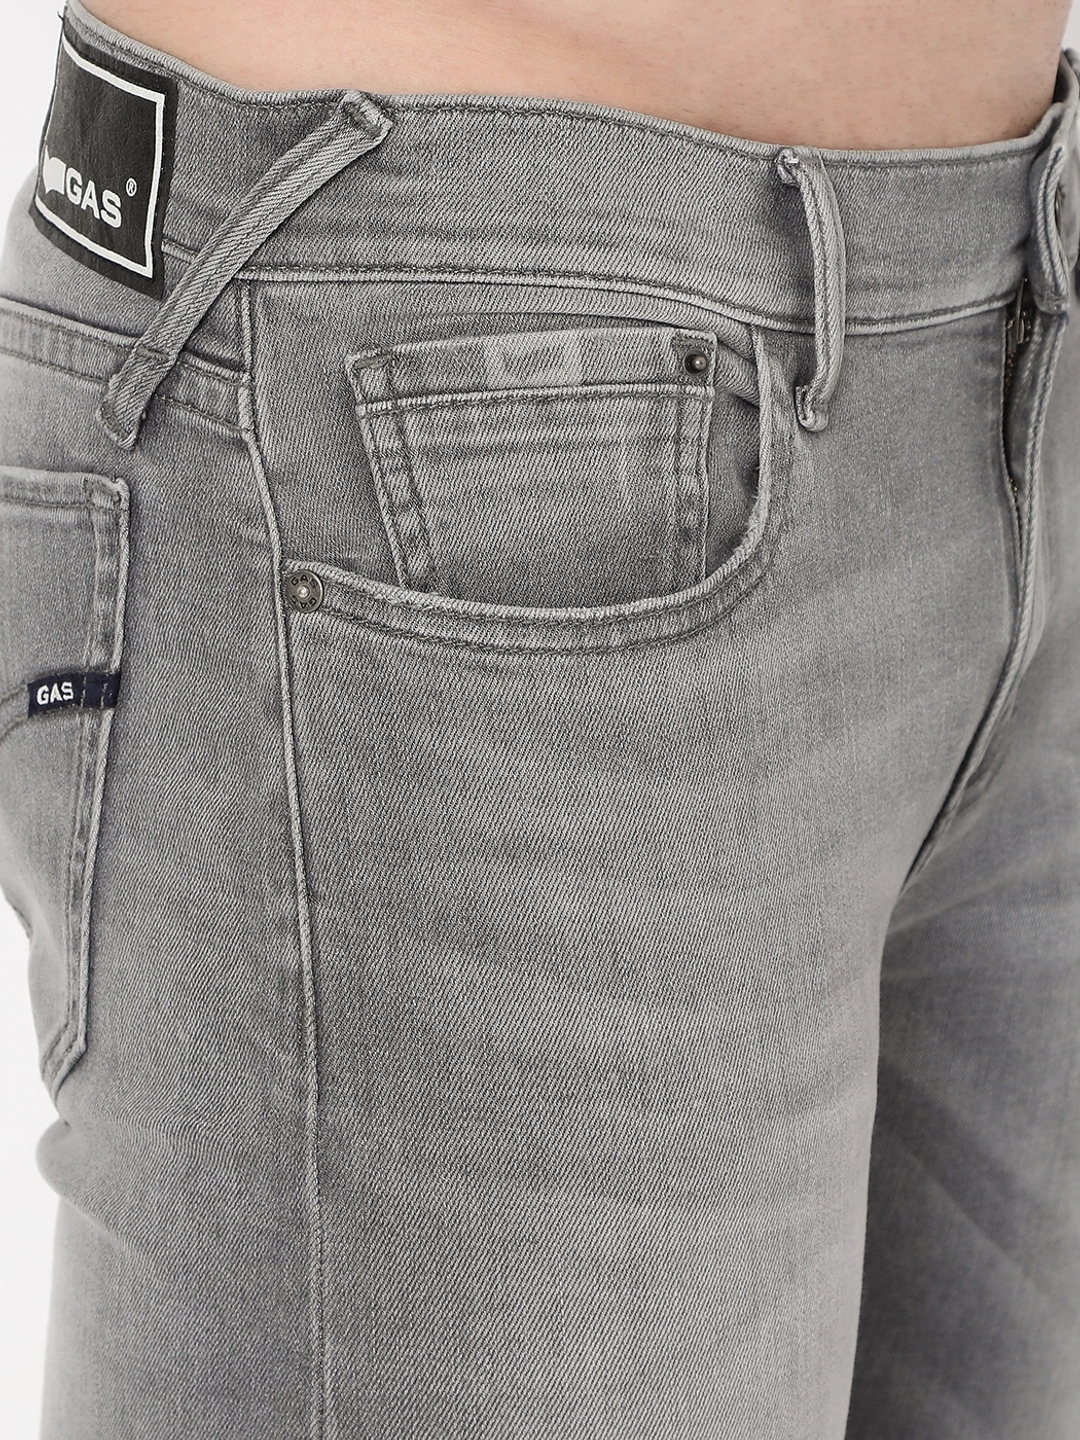 Men's E-motion Toki Regular Fit Jeans